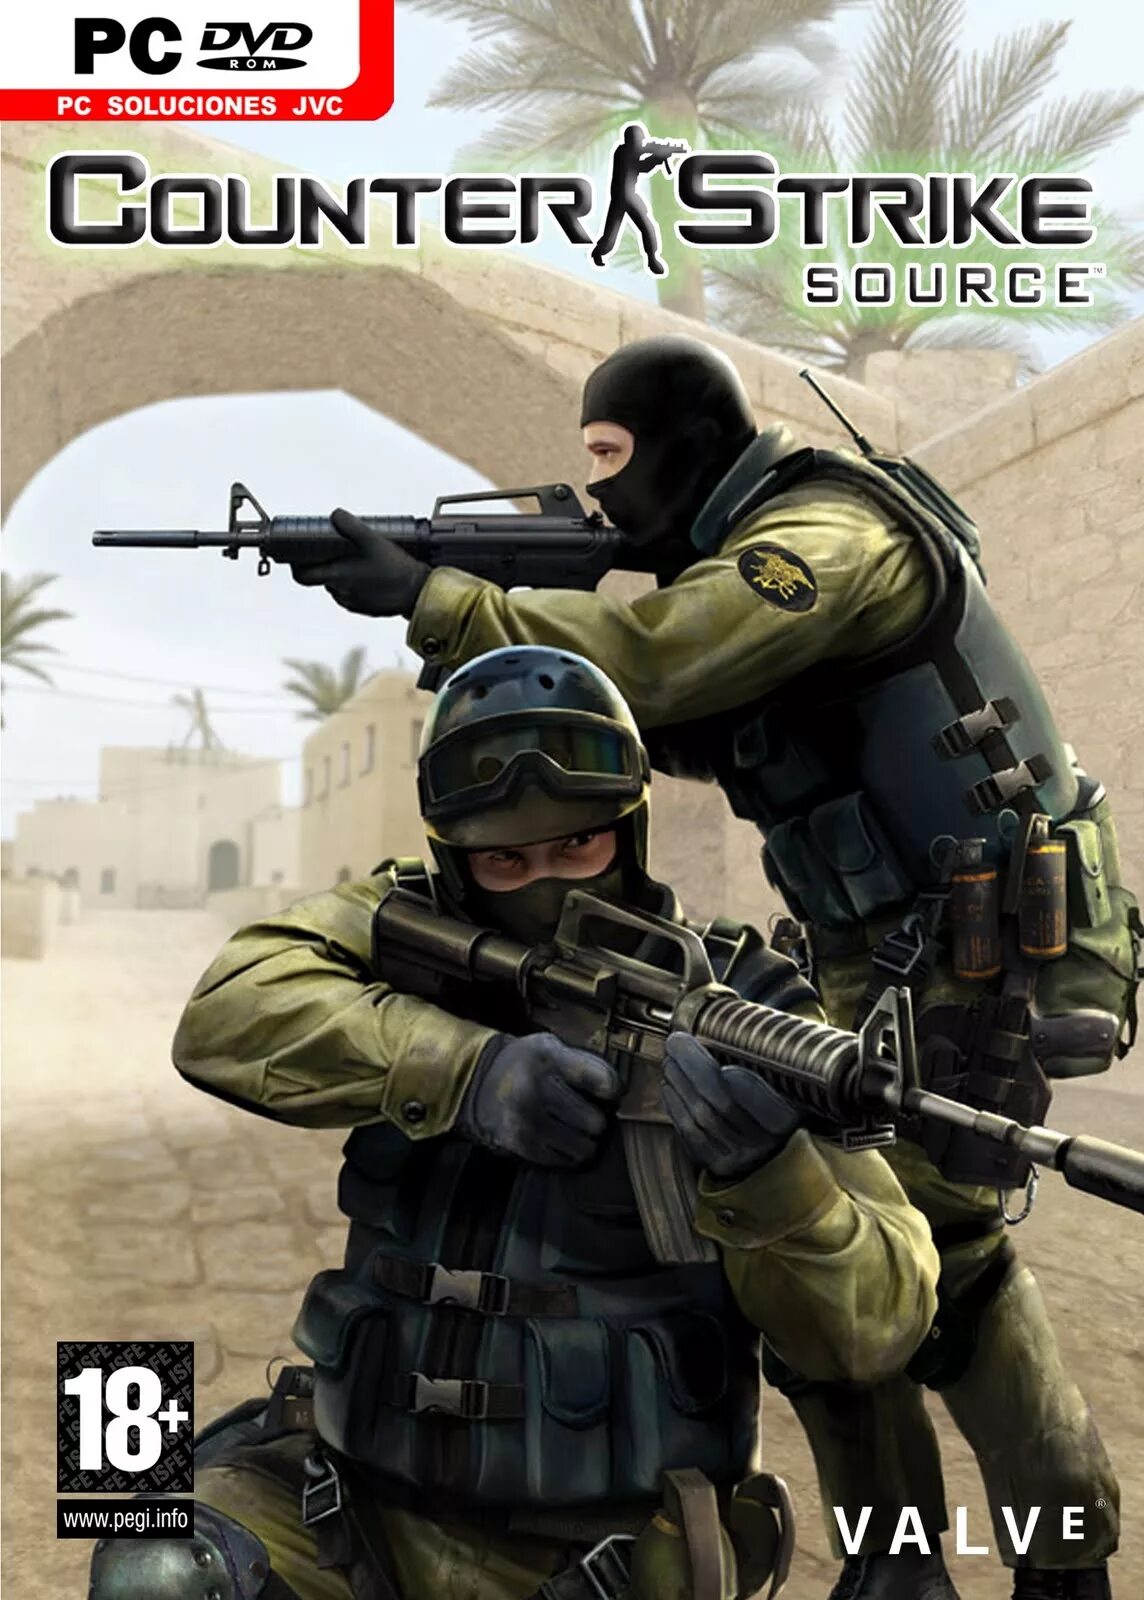 Contra strike. Counter Strike 1.6. Counter Strike 1.6 обложка. Counter Strike source 1.6 2006. Counter Strike source v84.